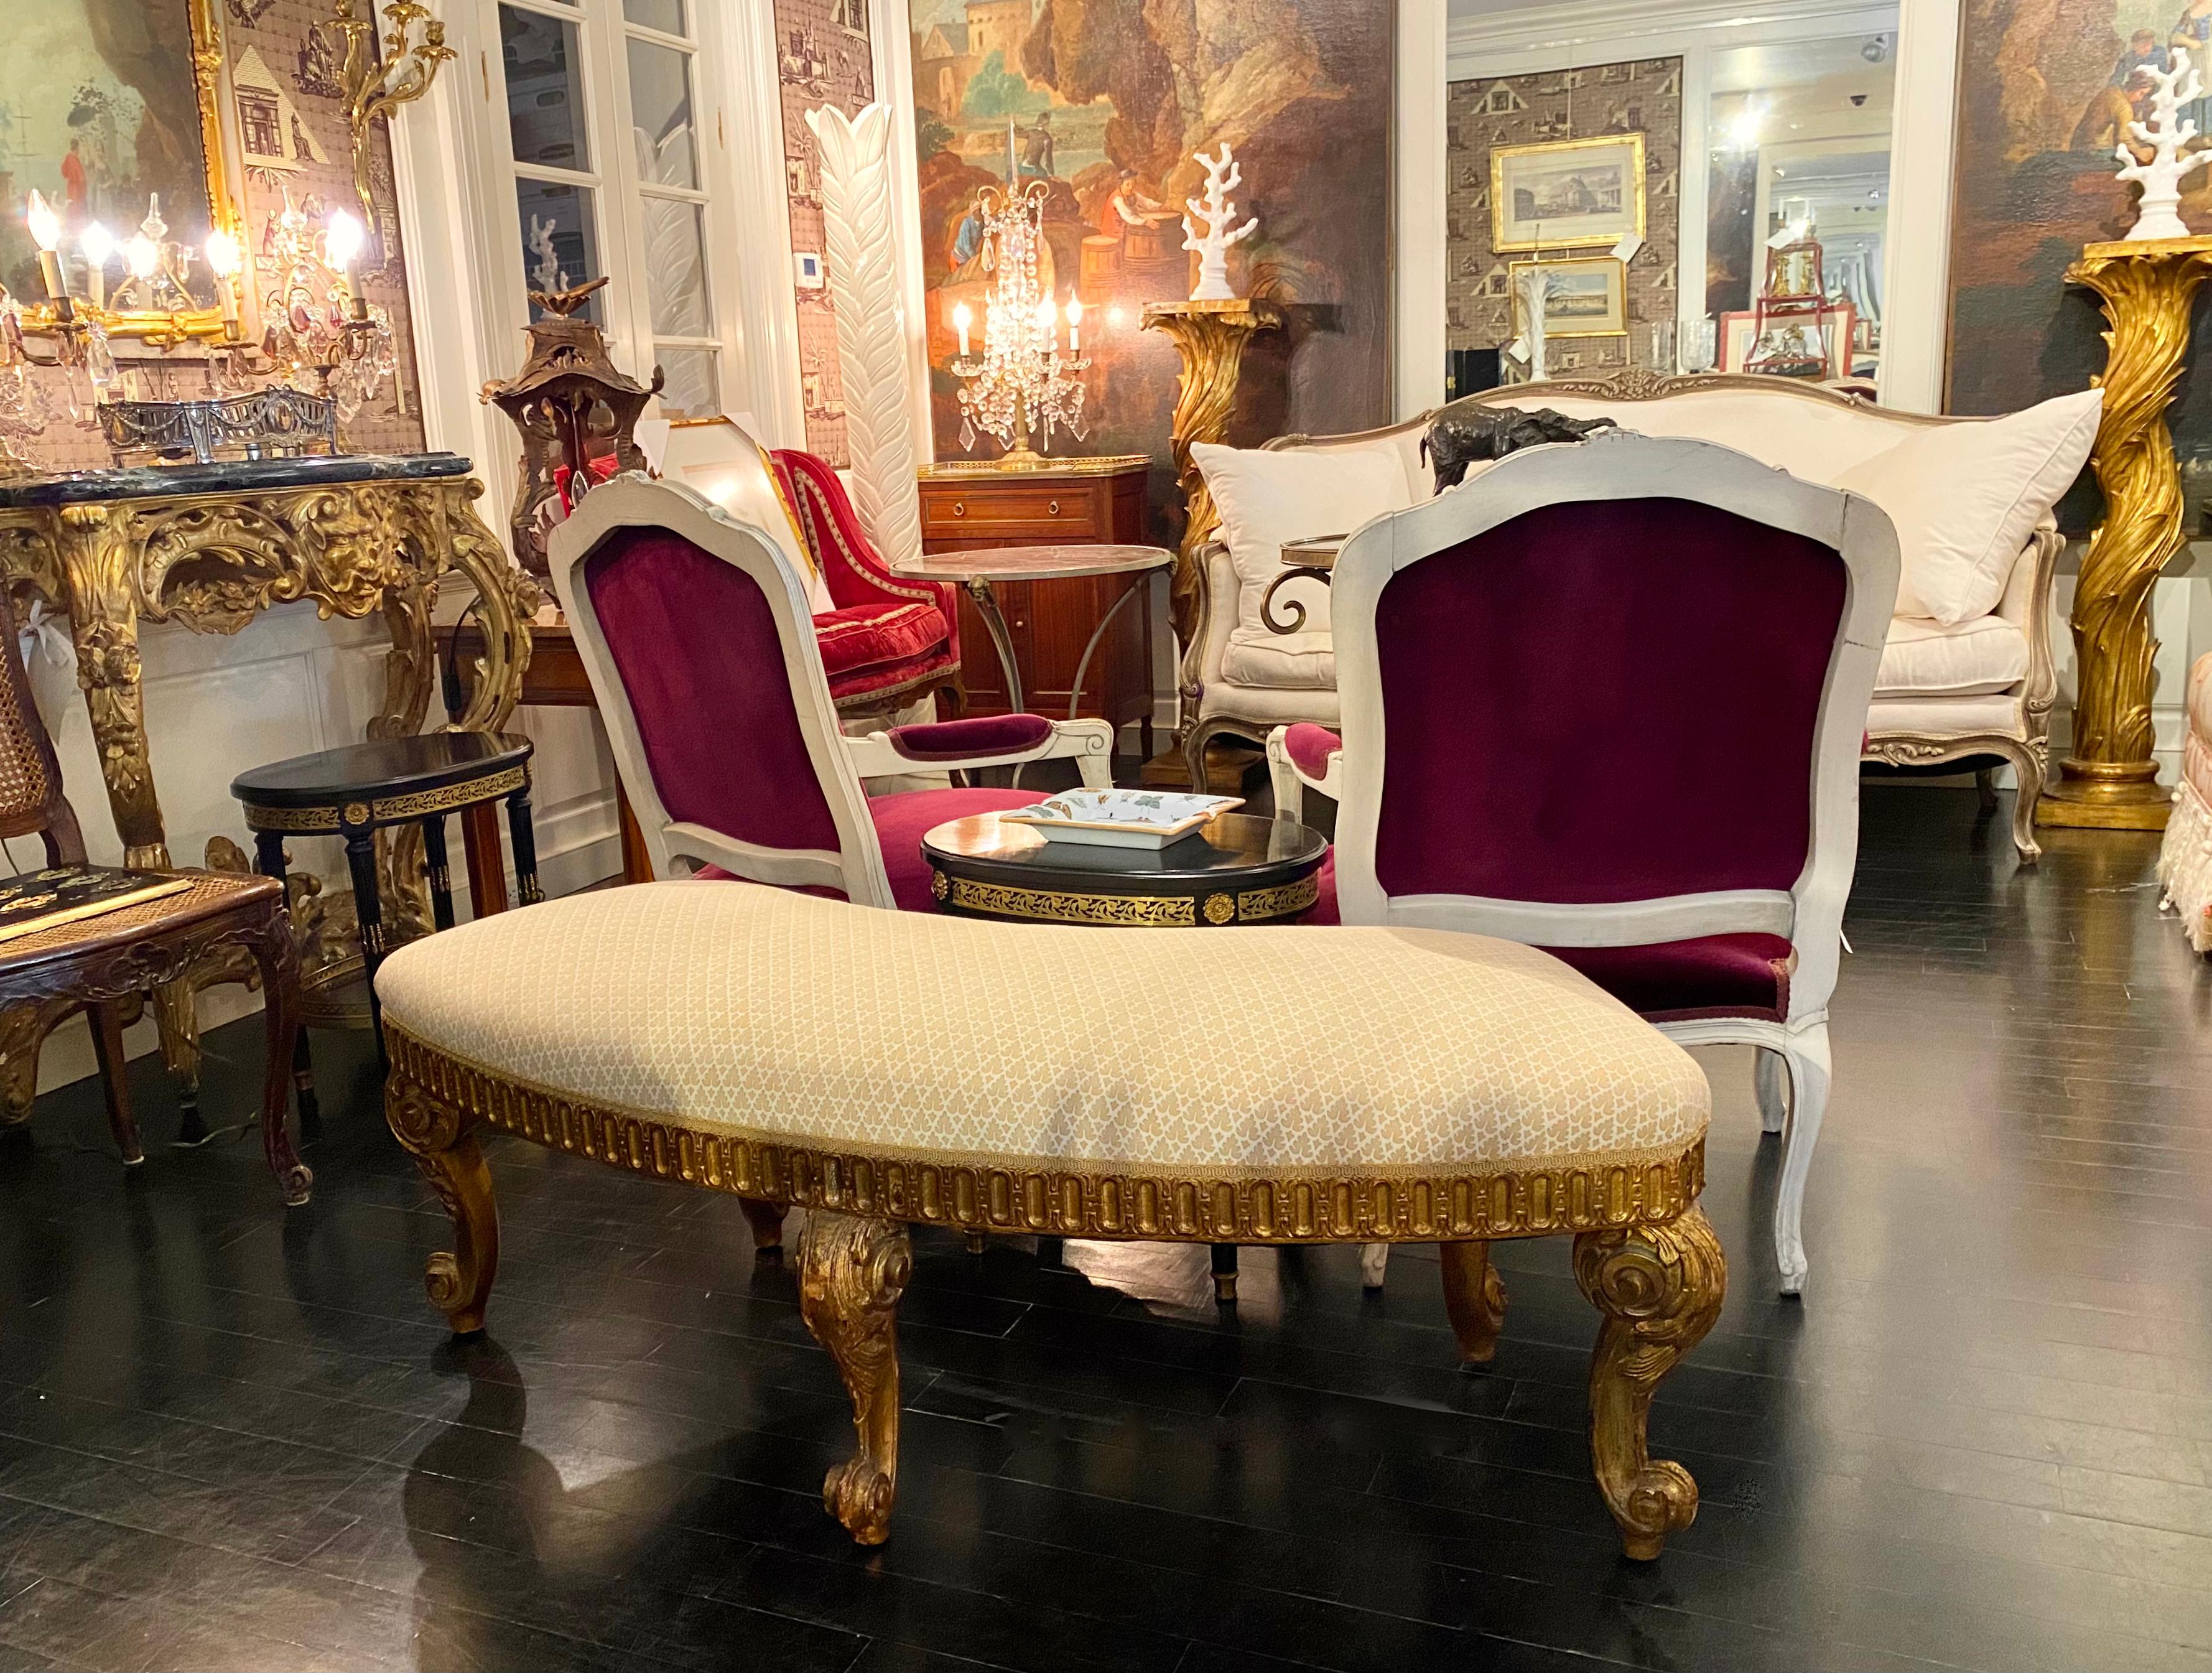 Französisch Louis XVI Stil Giltwood halbkreisförmige Bank, Modell inspiriert von Georges Jacob.

Auf vergoldeten Beinen ruhend, geschnitzt in der neoklassizistischen Tradition von Georges Jacob, prächtig geschnitzte Details. Auch die Sitzkante ist